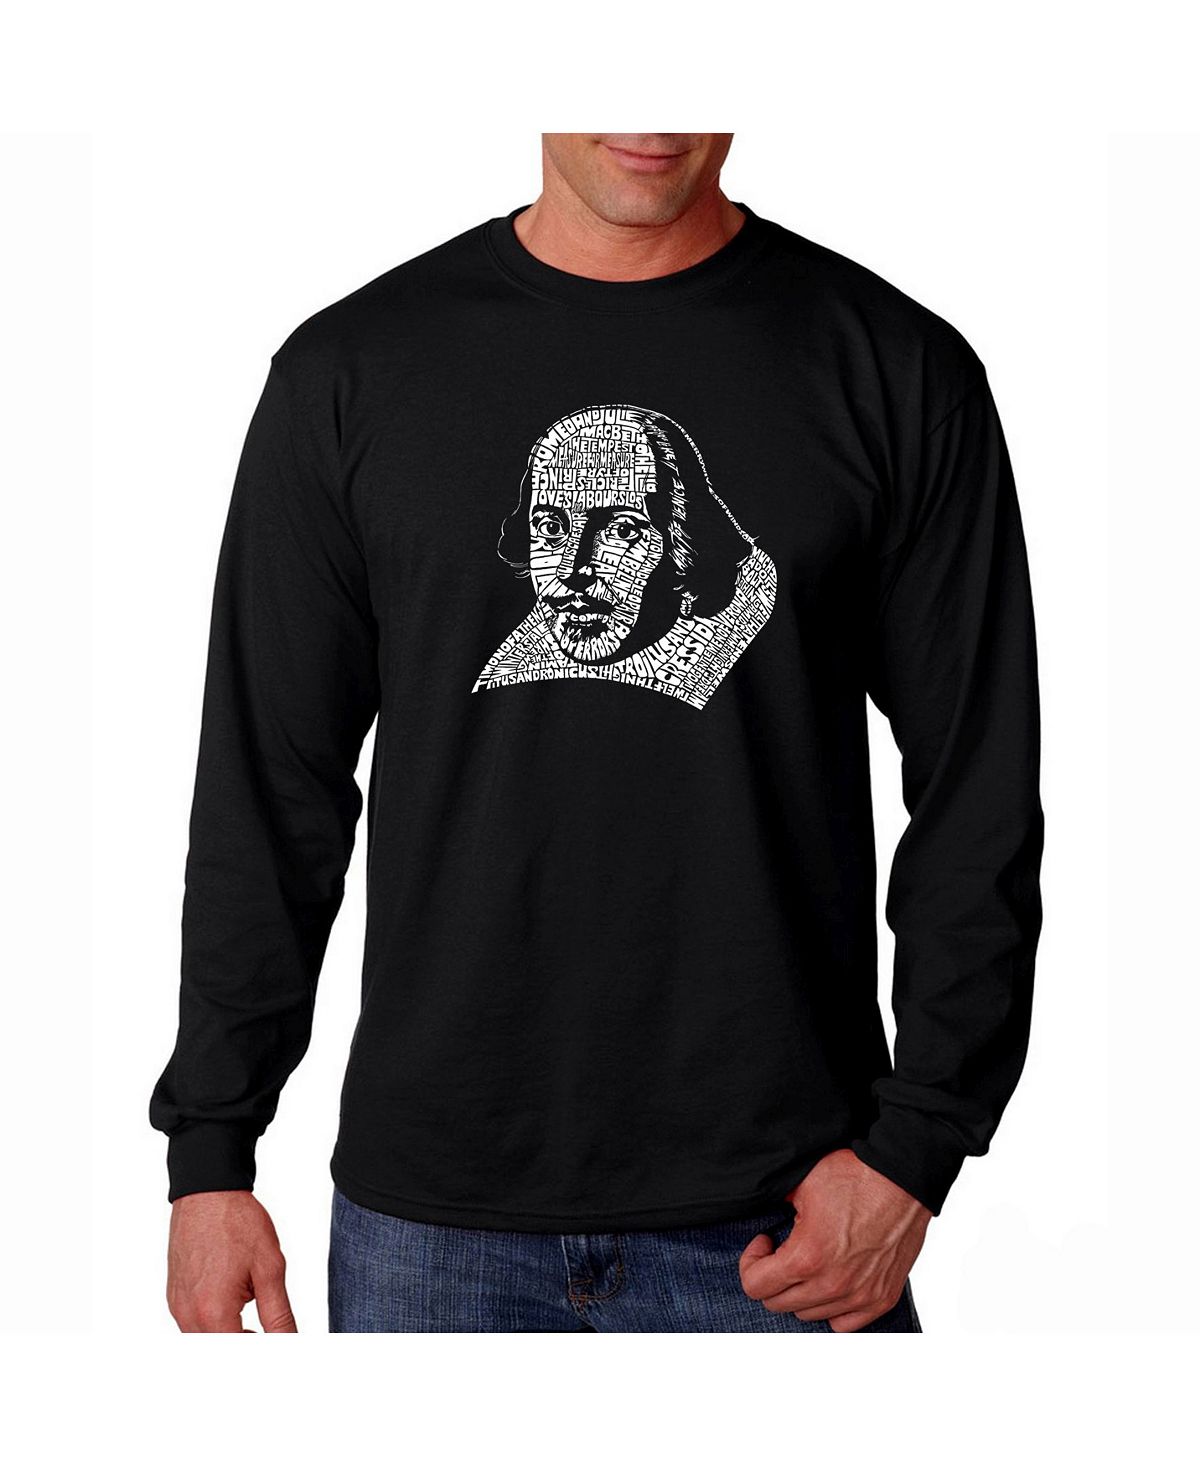 Мужская футболка с длинным рукавом word art - шекспир LA Pop Art, черный йейтс уильям батлер великие поэты мира